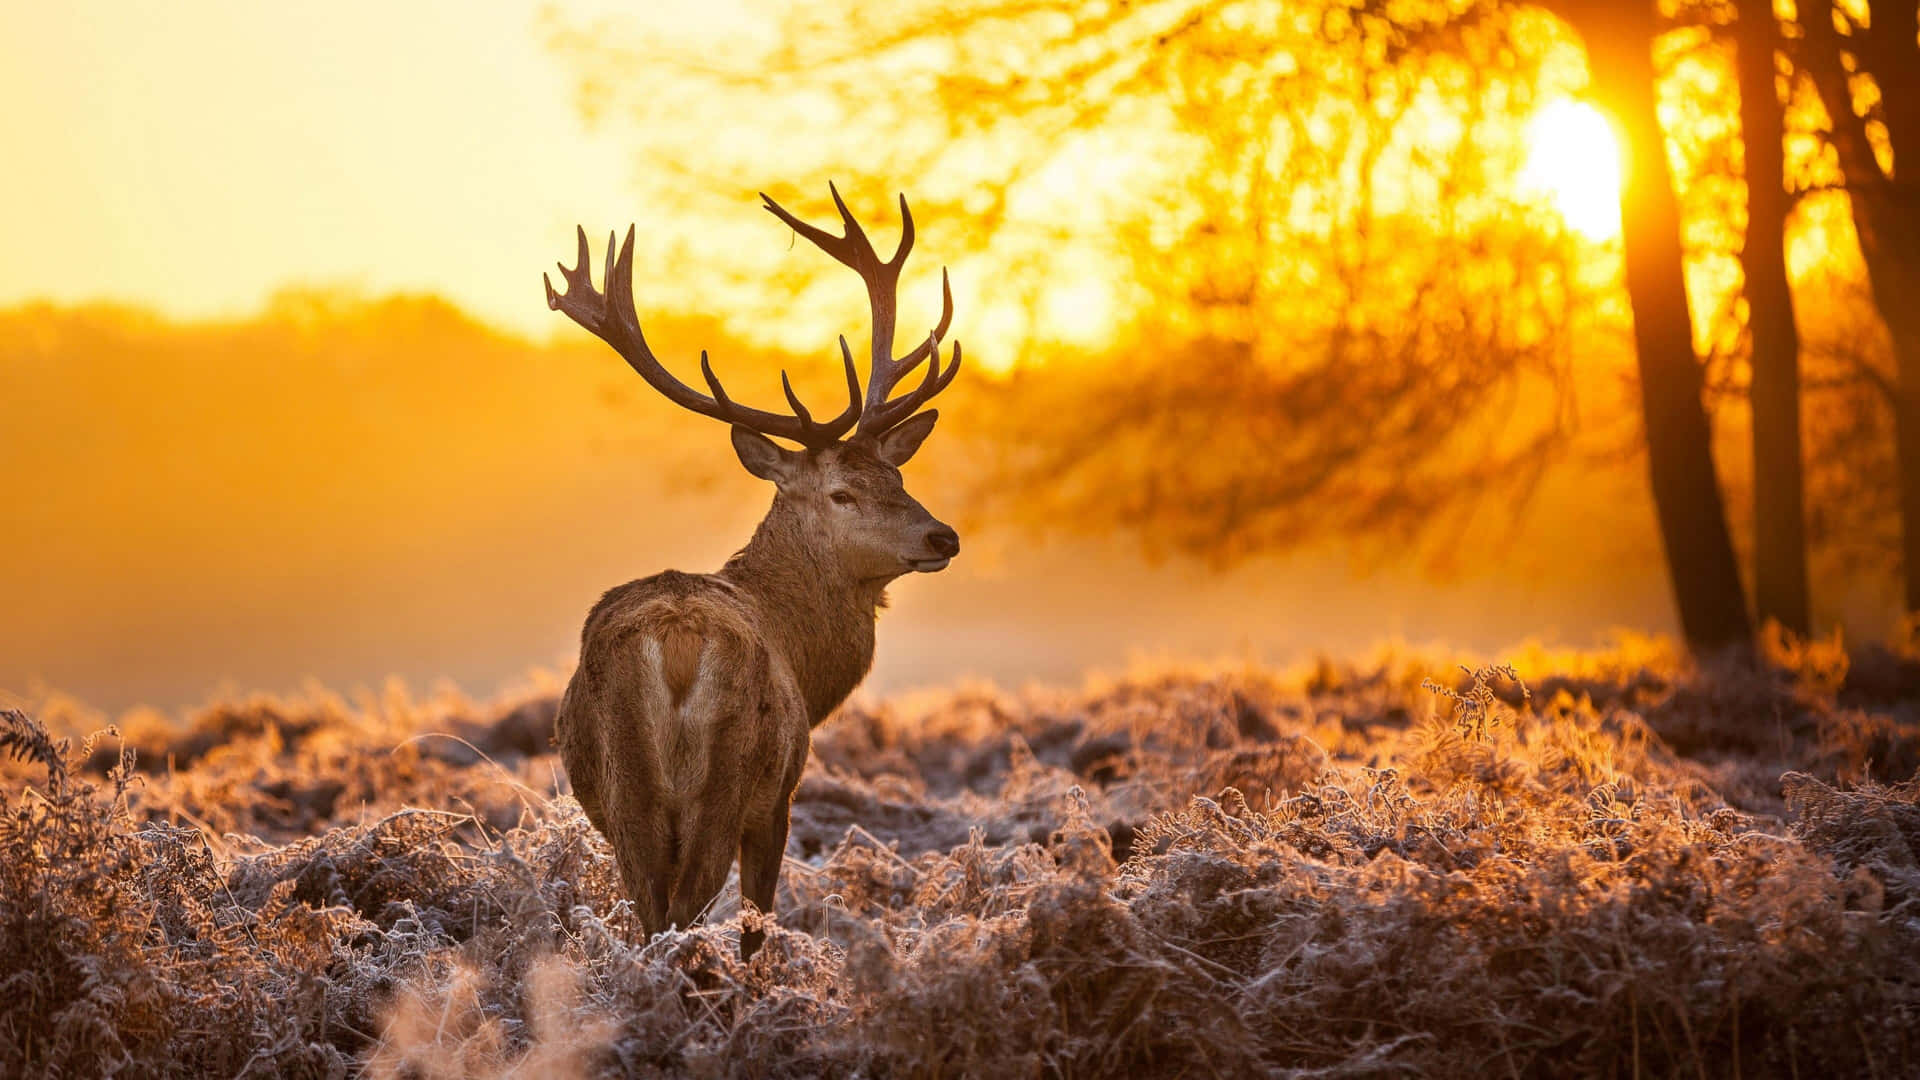 Majestic Deer Sunrise Glow Wallpaper